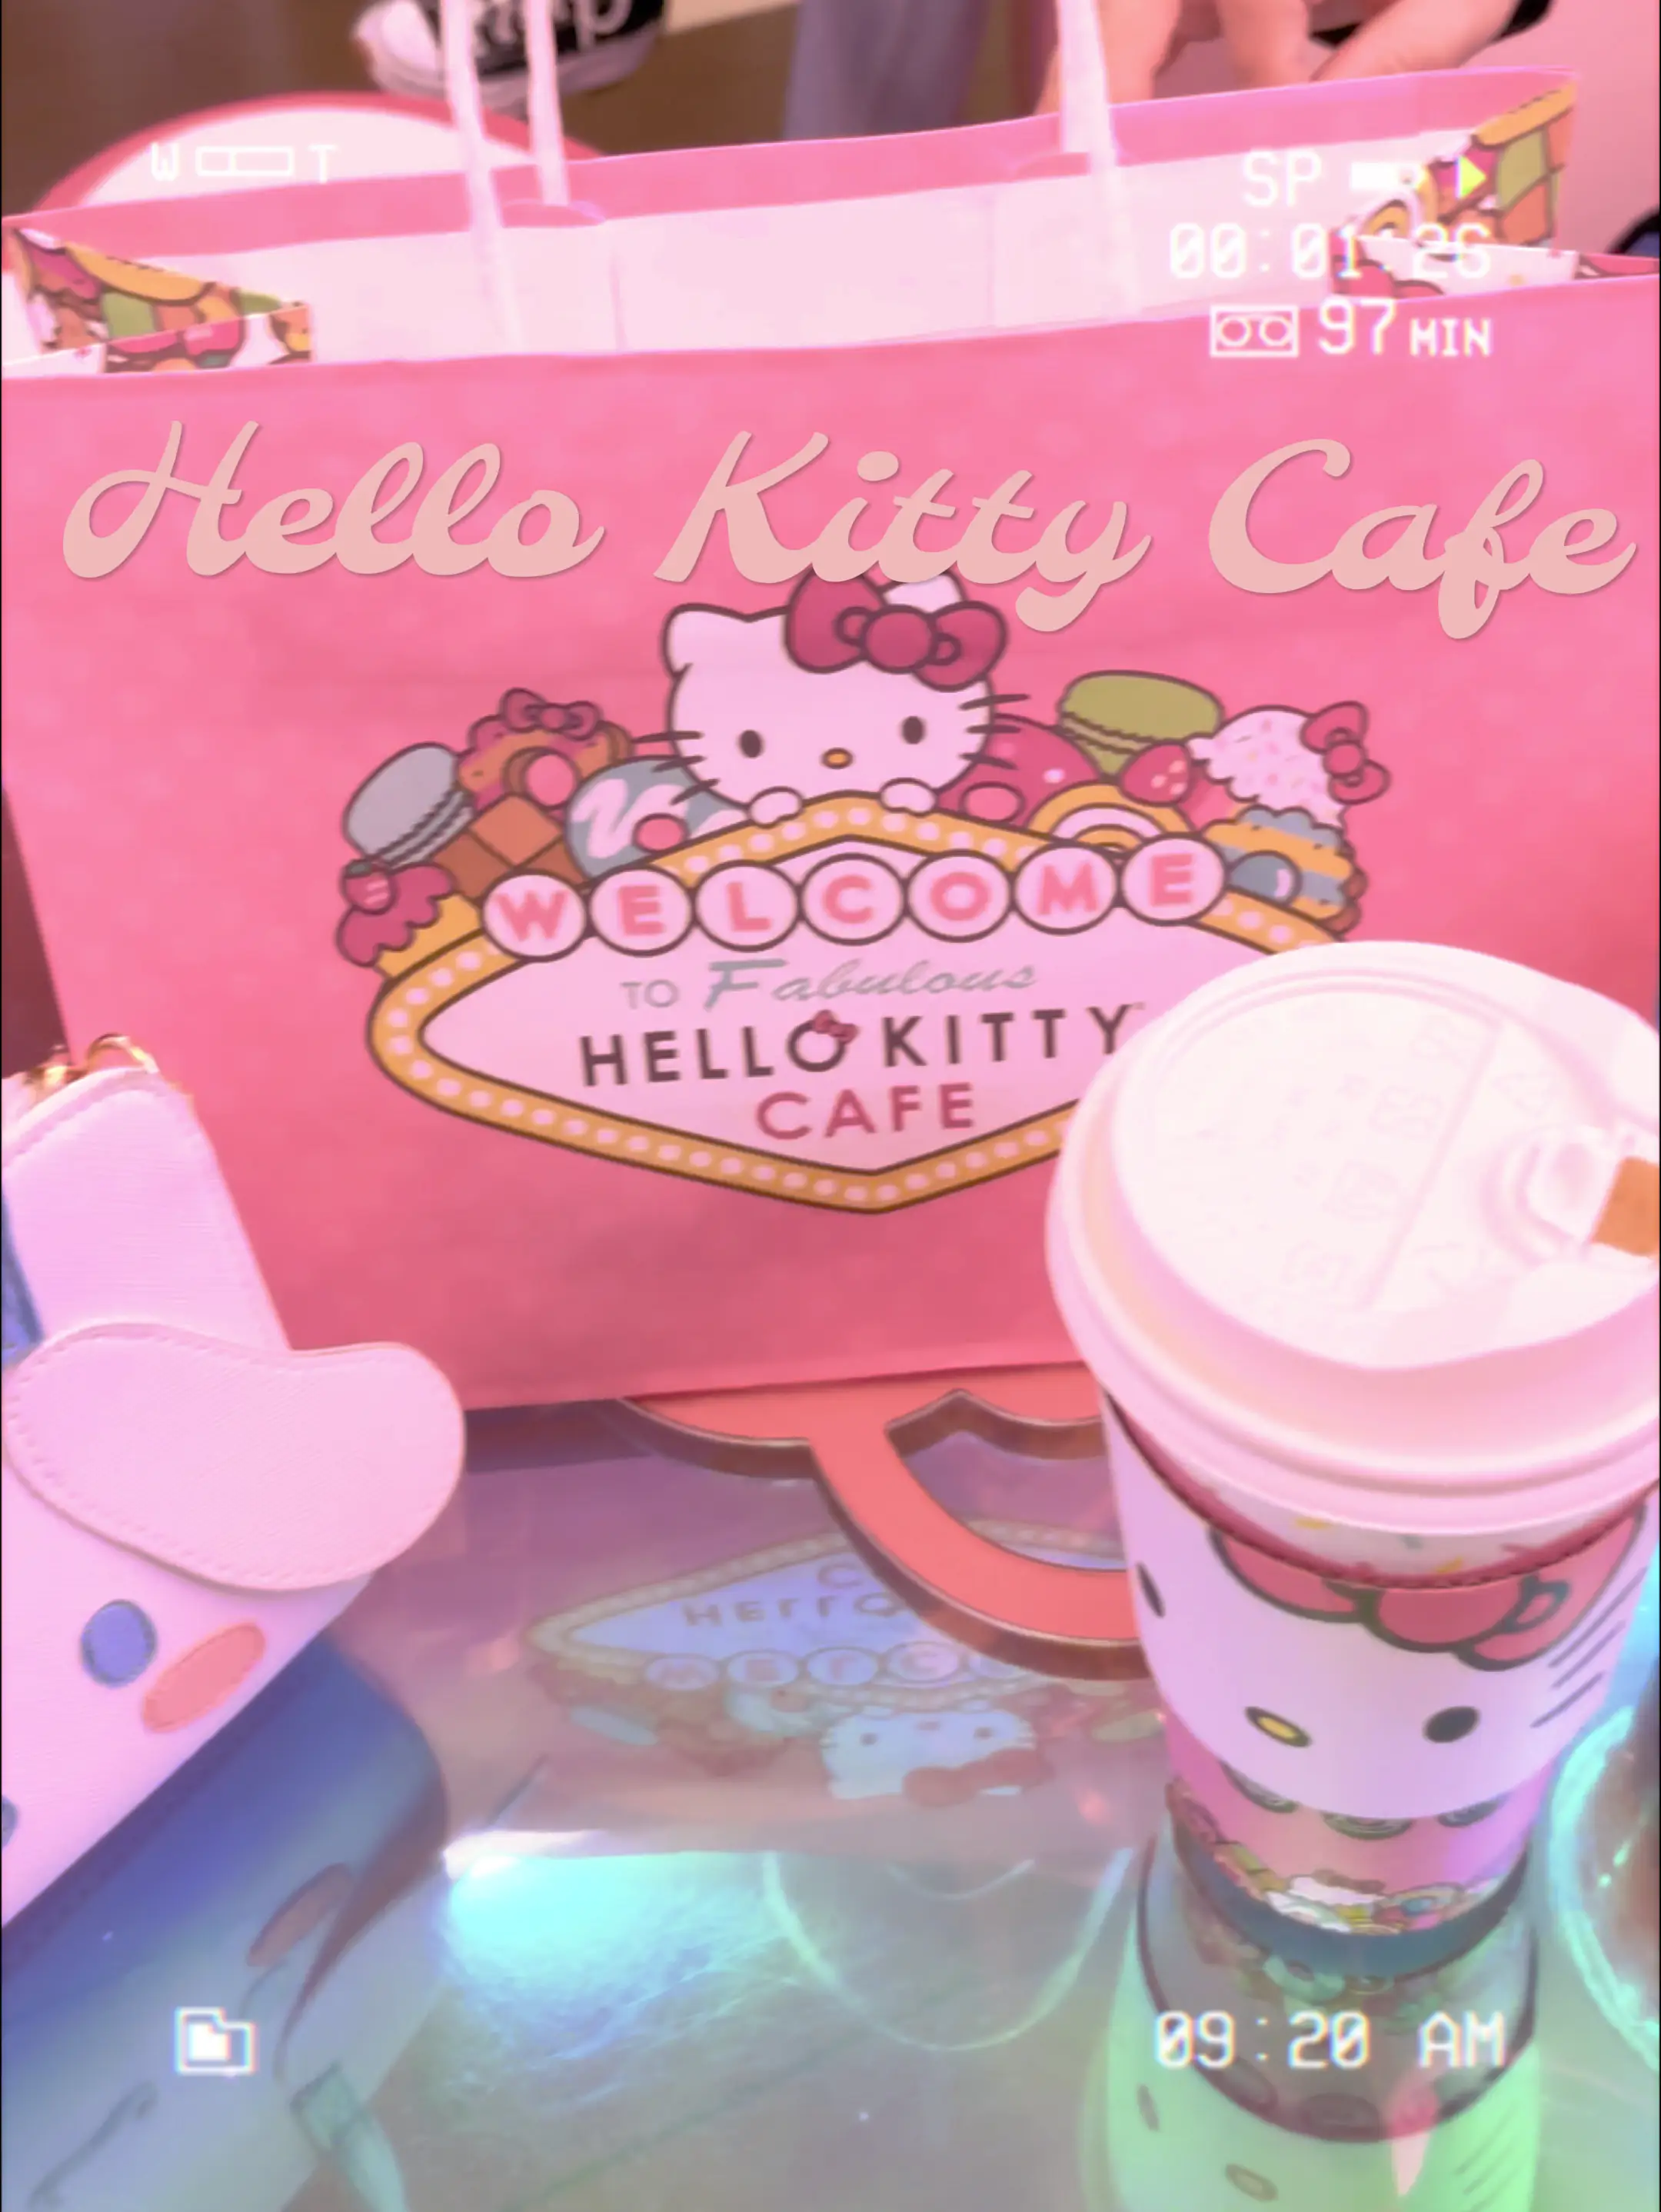 Hello Kitty: Still fabulous at 40